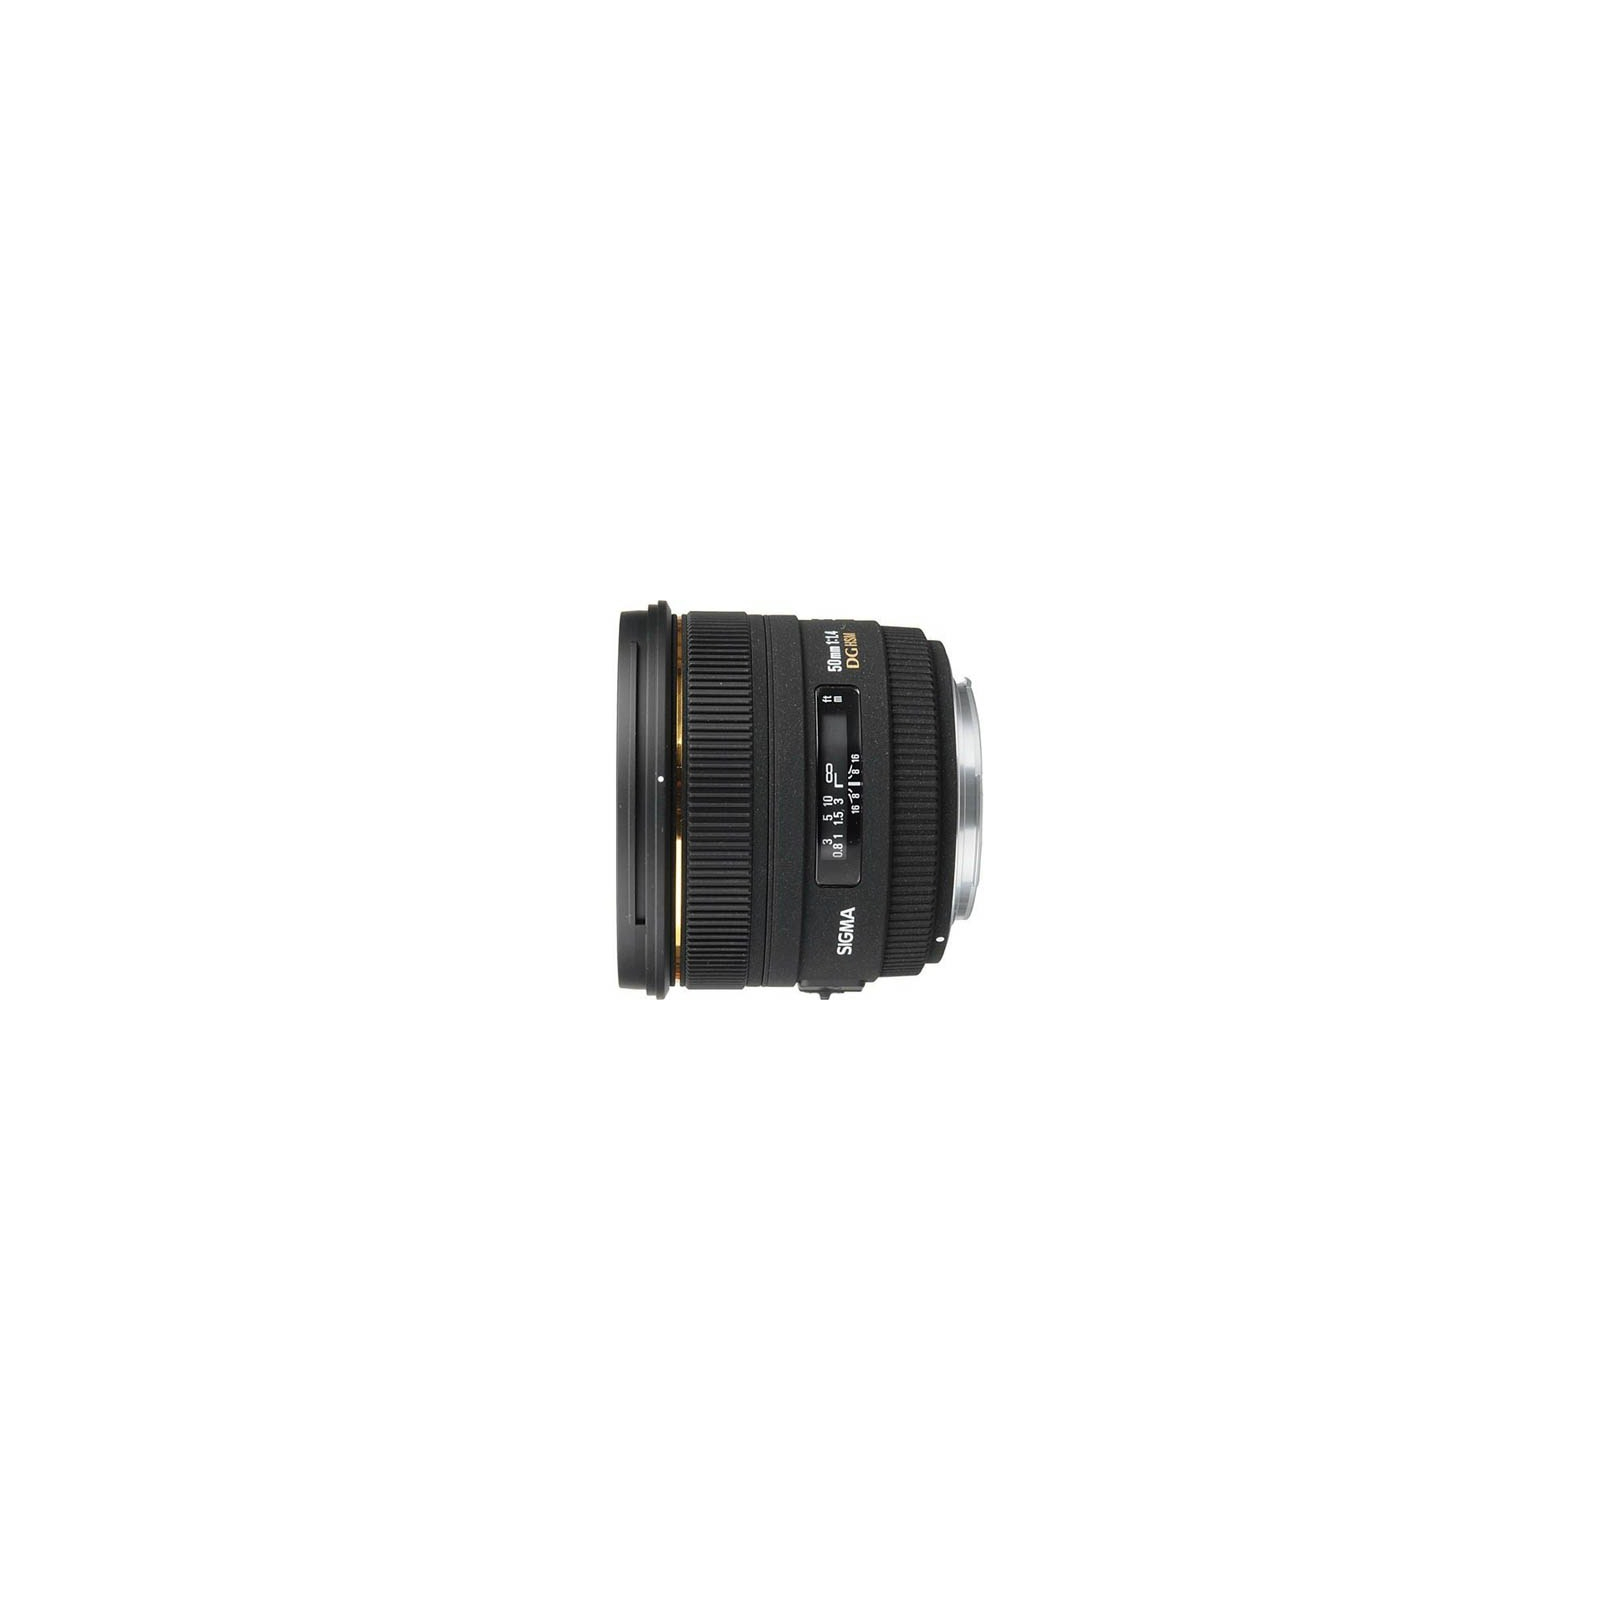 Объектив Sigma 50mm f/1.4 EX DC HSM for Nikon (310955)